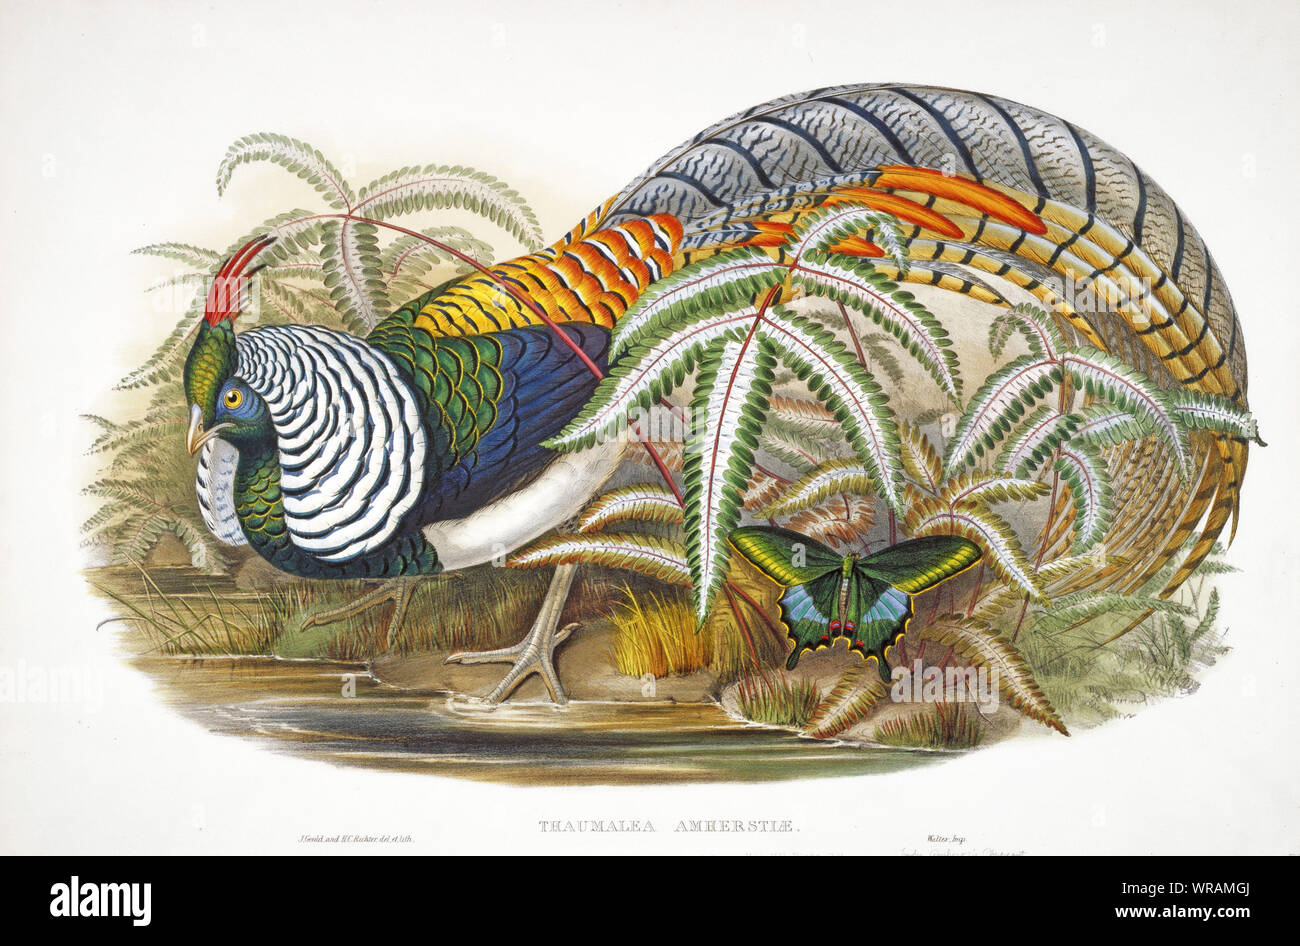 Le Faisan de Lady Amherst (Thaumalea Amherstiae), lithographie de 'Les oiseaux d'Asie' qui a publié dans le 19ème siècle. Sketch par John Gould. Banque D'Images